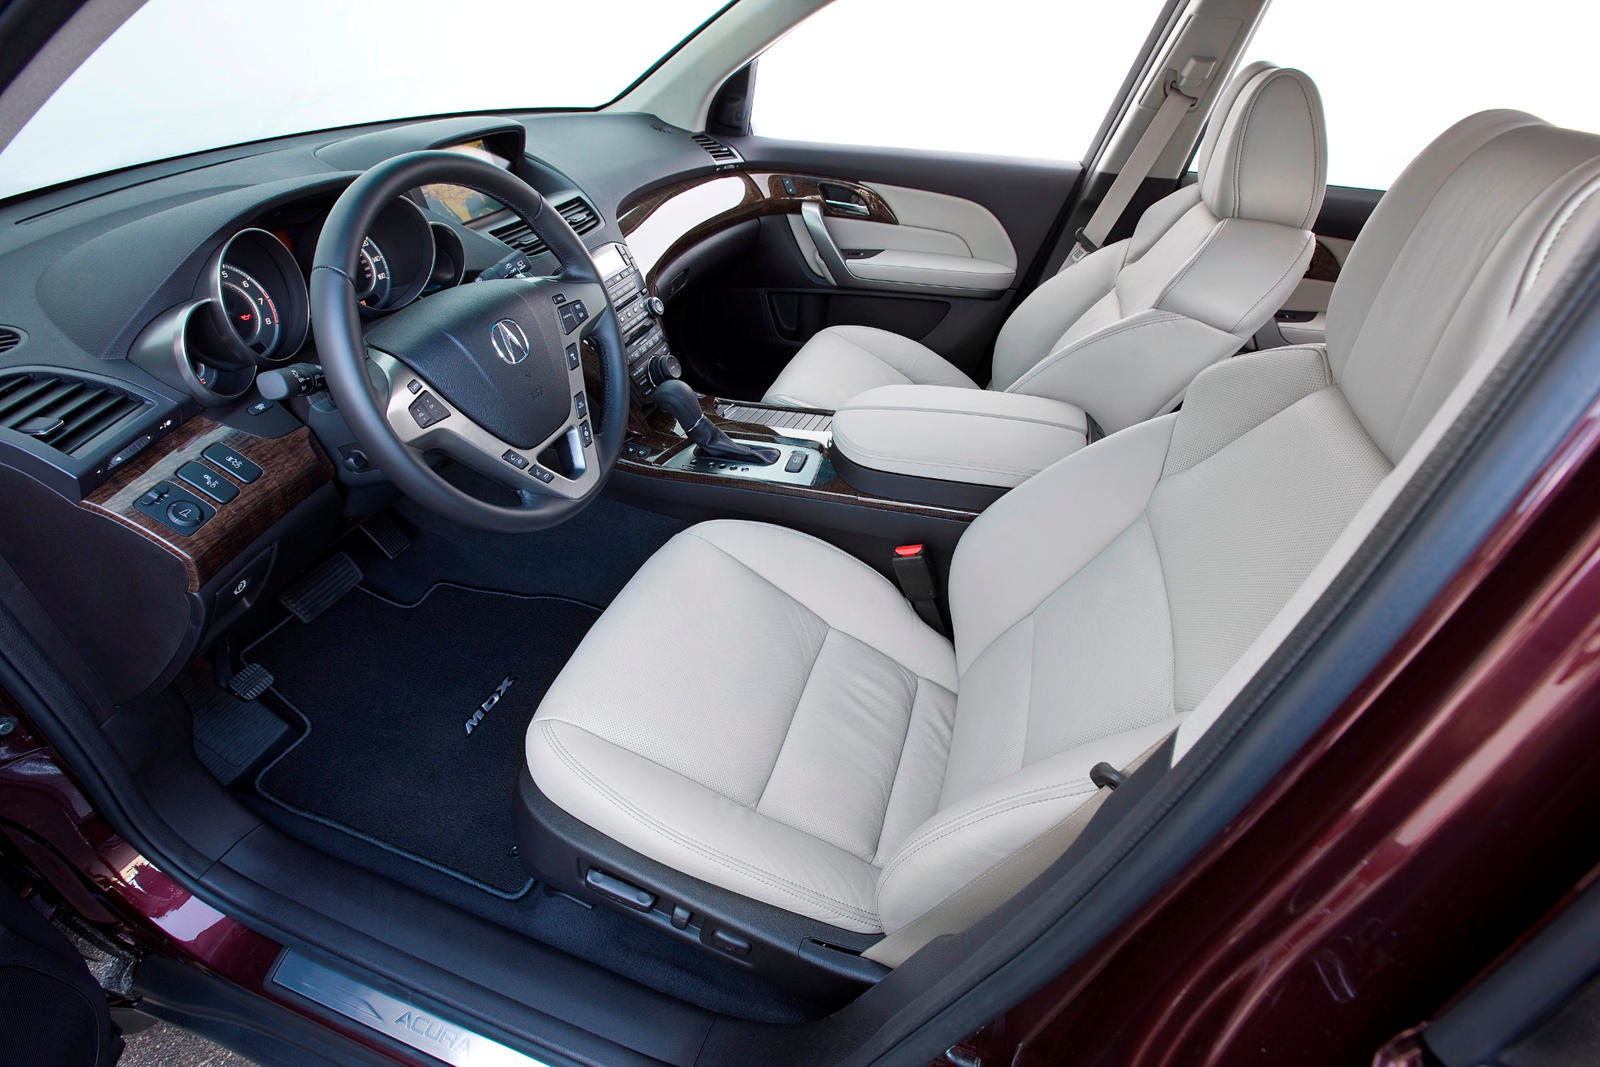 2013 Acura MDX Interior Photos | CarBuzz